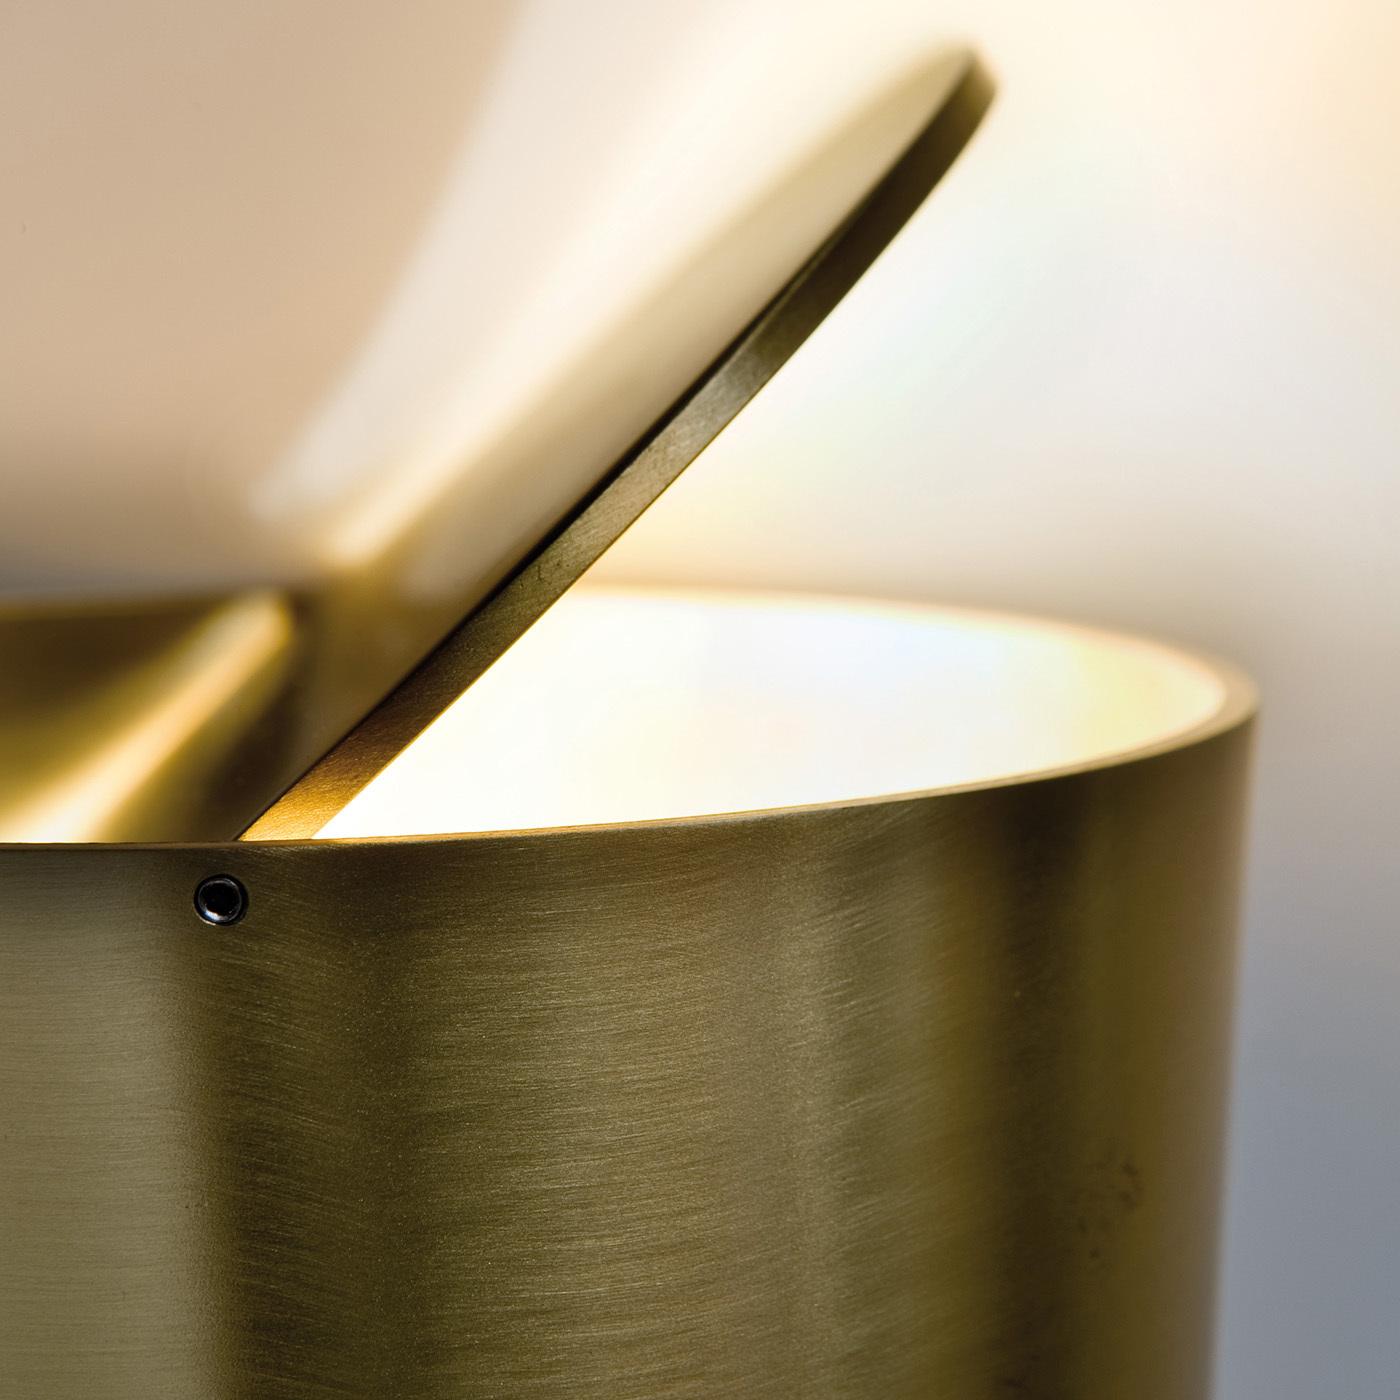 L'innovante lampe de table Tubo présente une élégante structure en laiton satiné avec un ingénieux disque supérieur réglable pour calibrer l'intensité et la direction de la lumière. Cette lampe élégante et intelligente est la pièce parfaite pour les